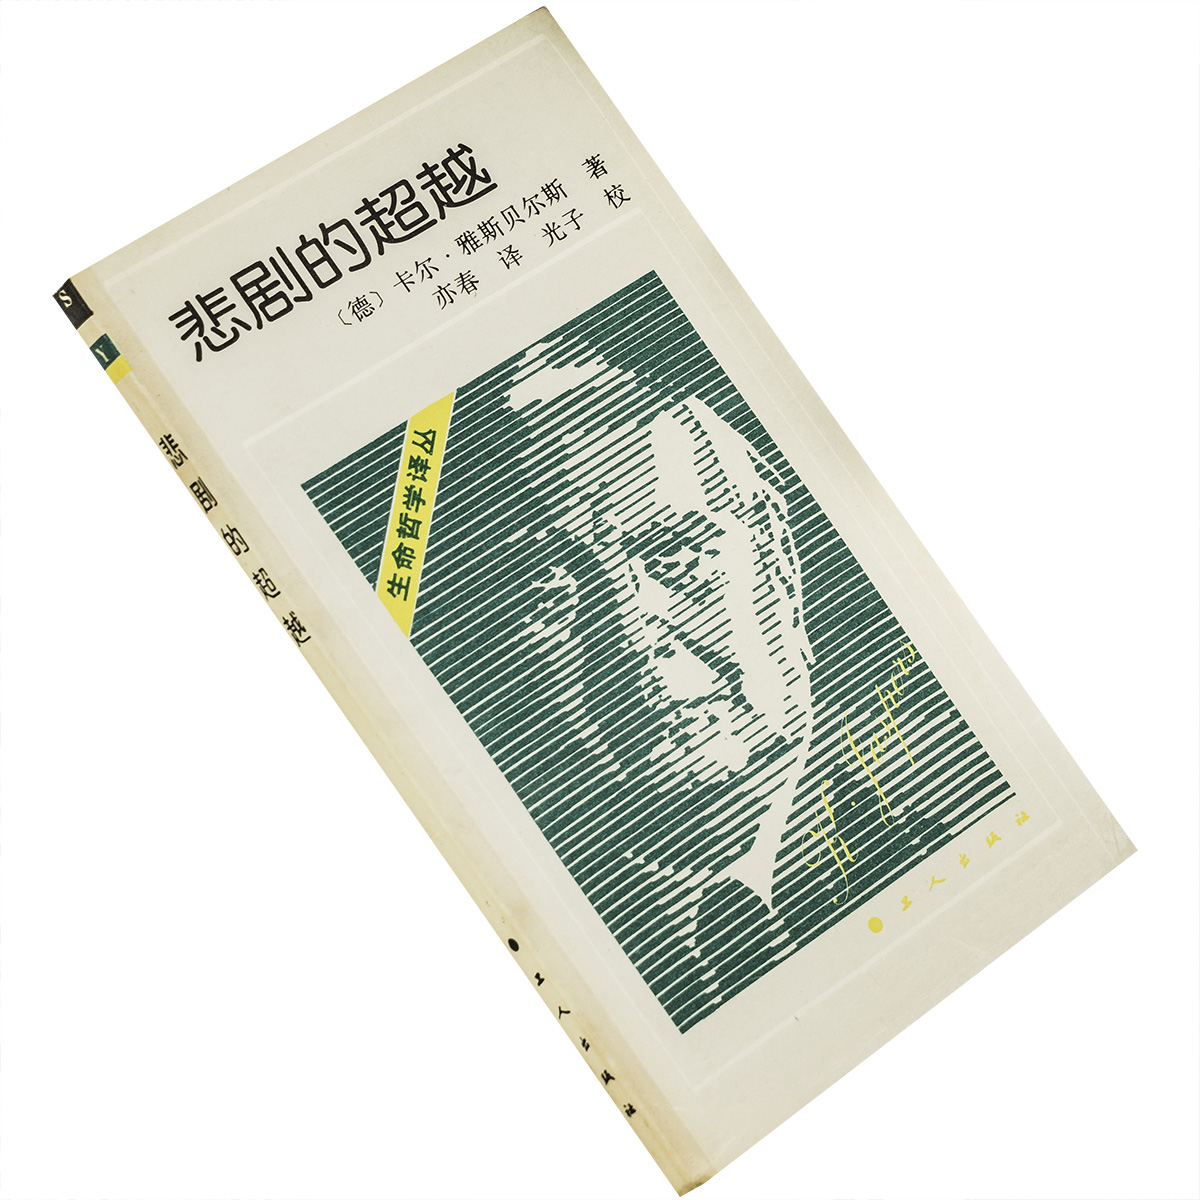 悲剧的超越 雅斯贝尔斯 中国工人出版社 哲学 正版书籍 老版